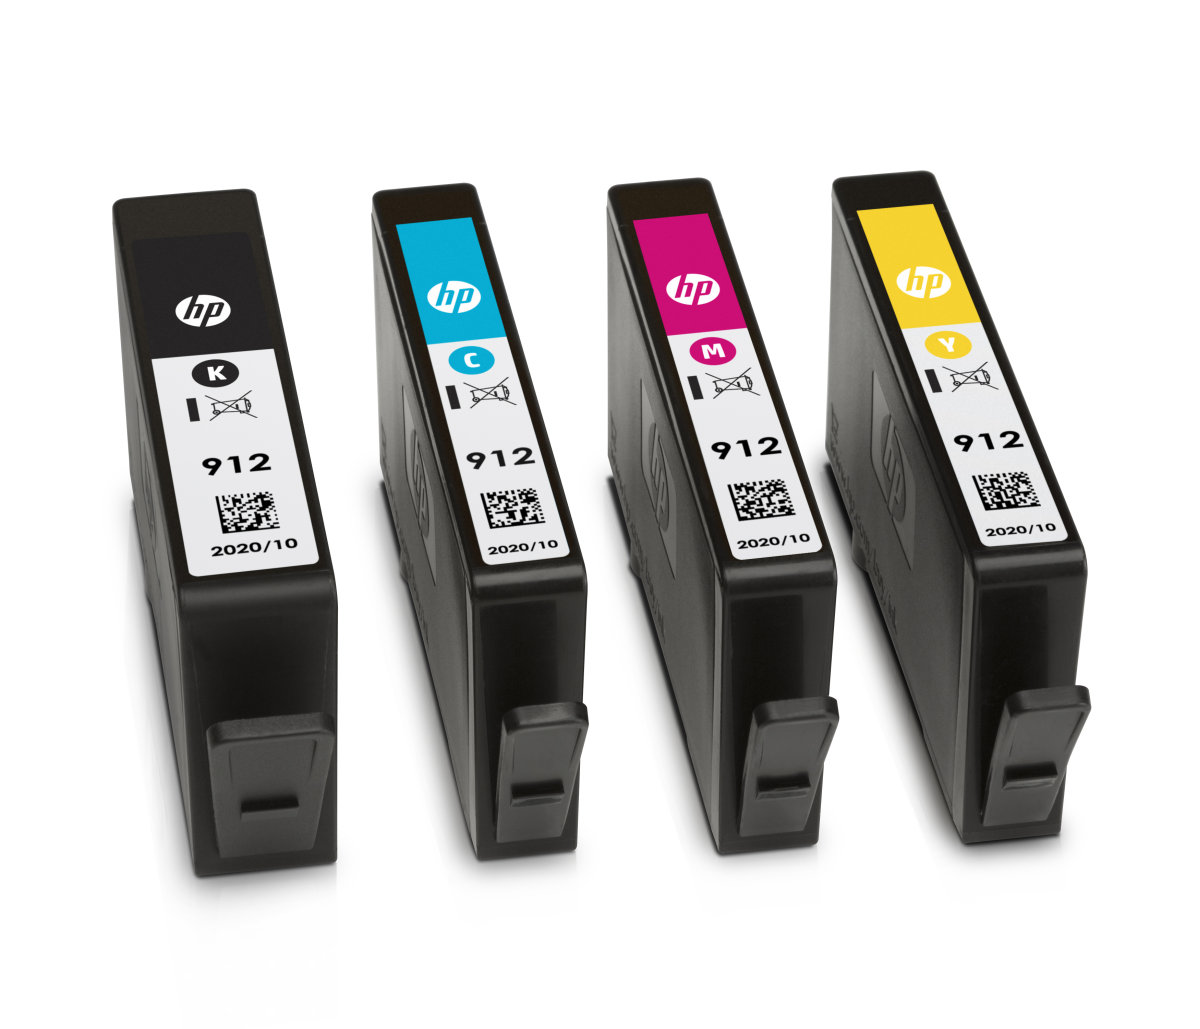 Sada inkoustových kazet HP 912 pro snadné objednání (HP-912)